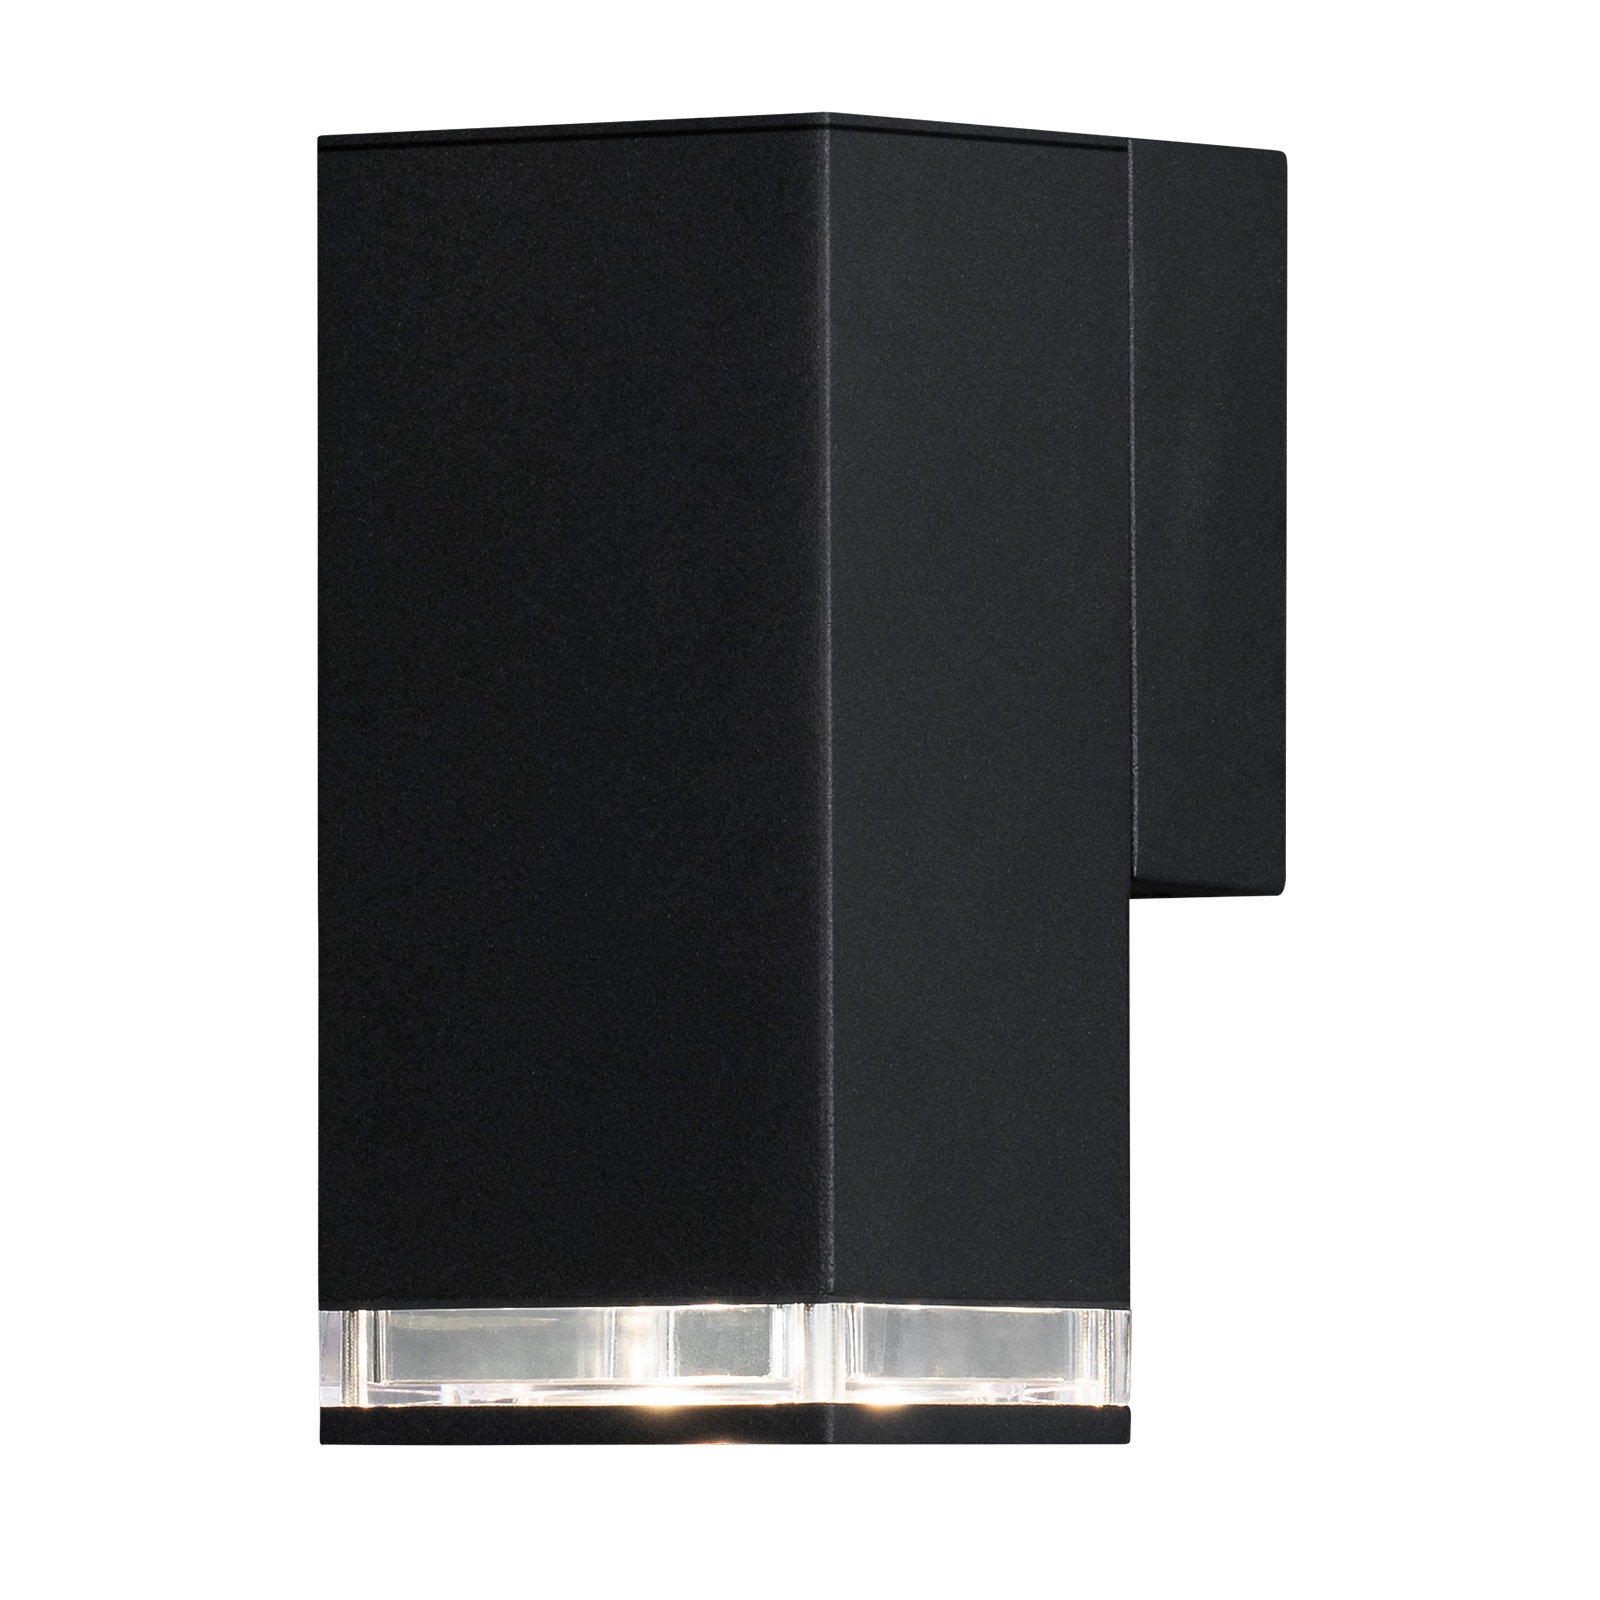 Kültéri fali lámpa Pollux Downlight 16,5cm, fekete